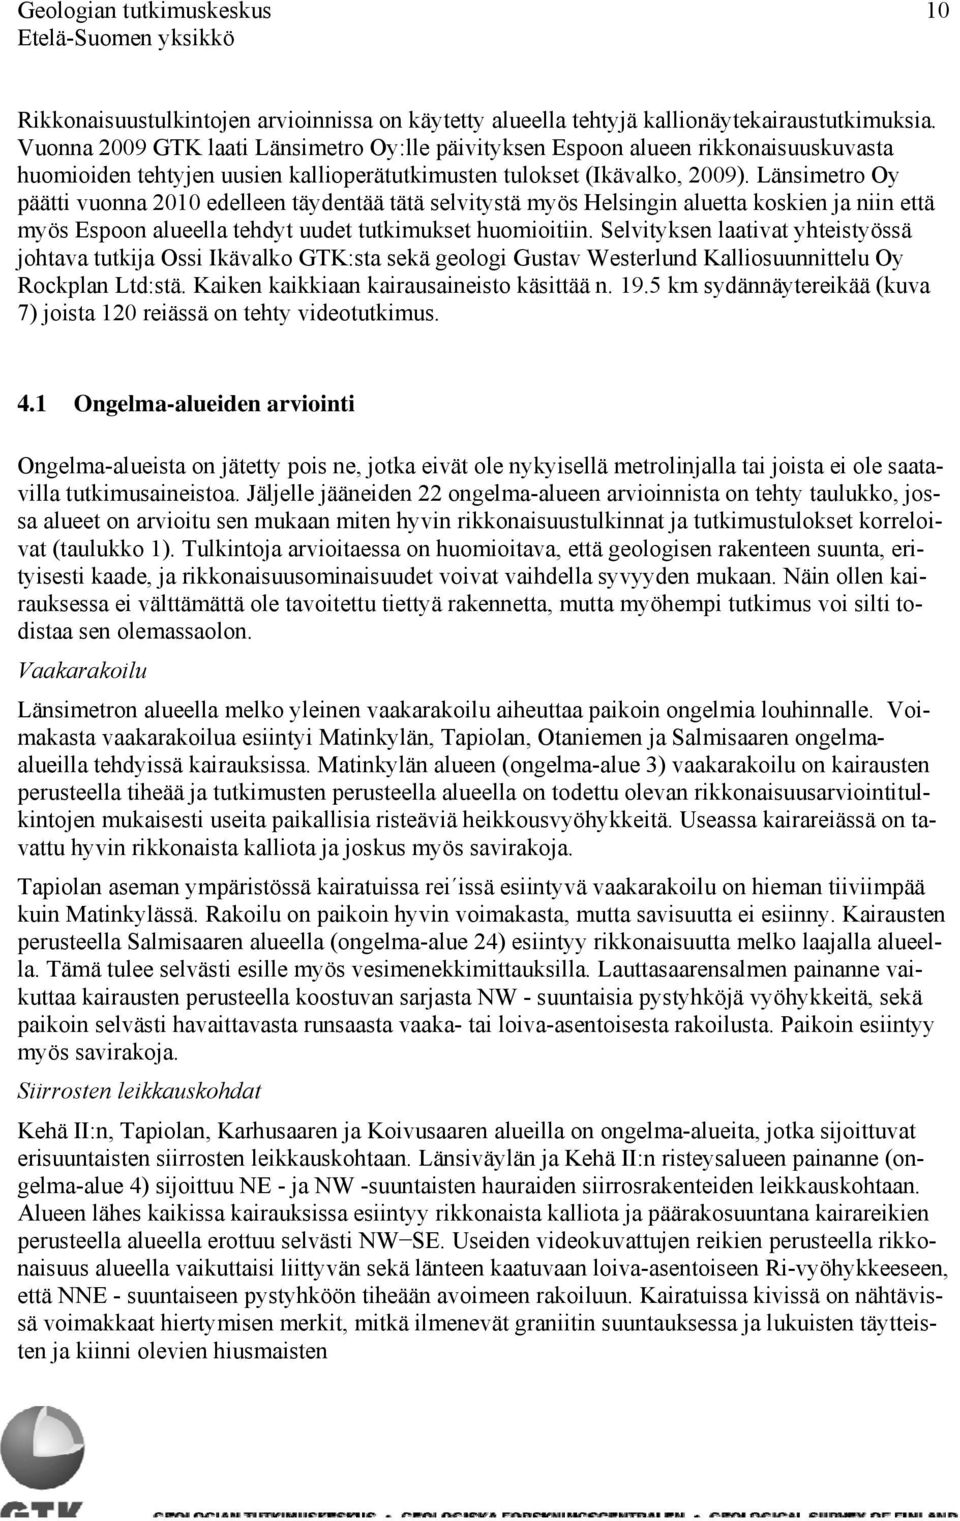 Länsimetro Oy päätti vuonna 2010 edelleen täydentää tätä selvitystä myös Helsingin aluetta koskien ja niin että myös Espoon alueella tehdyt uudet tutkimukset huomioitiin.